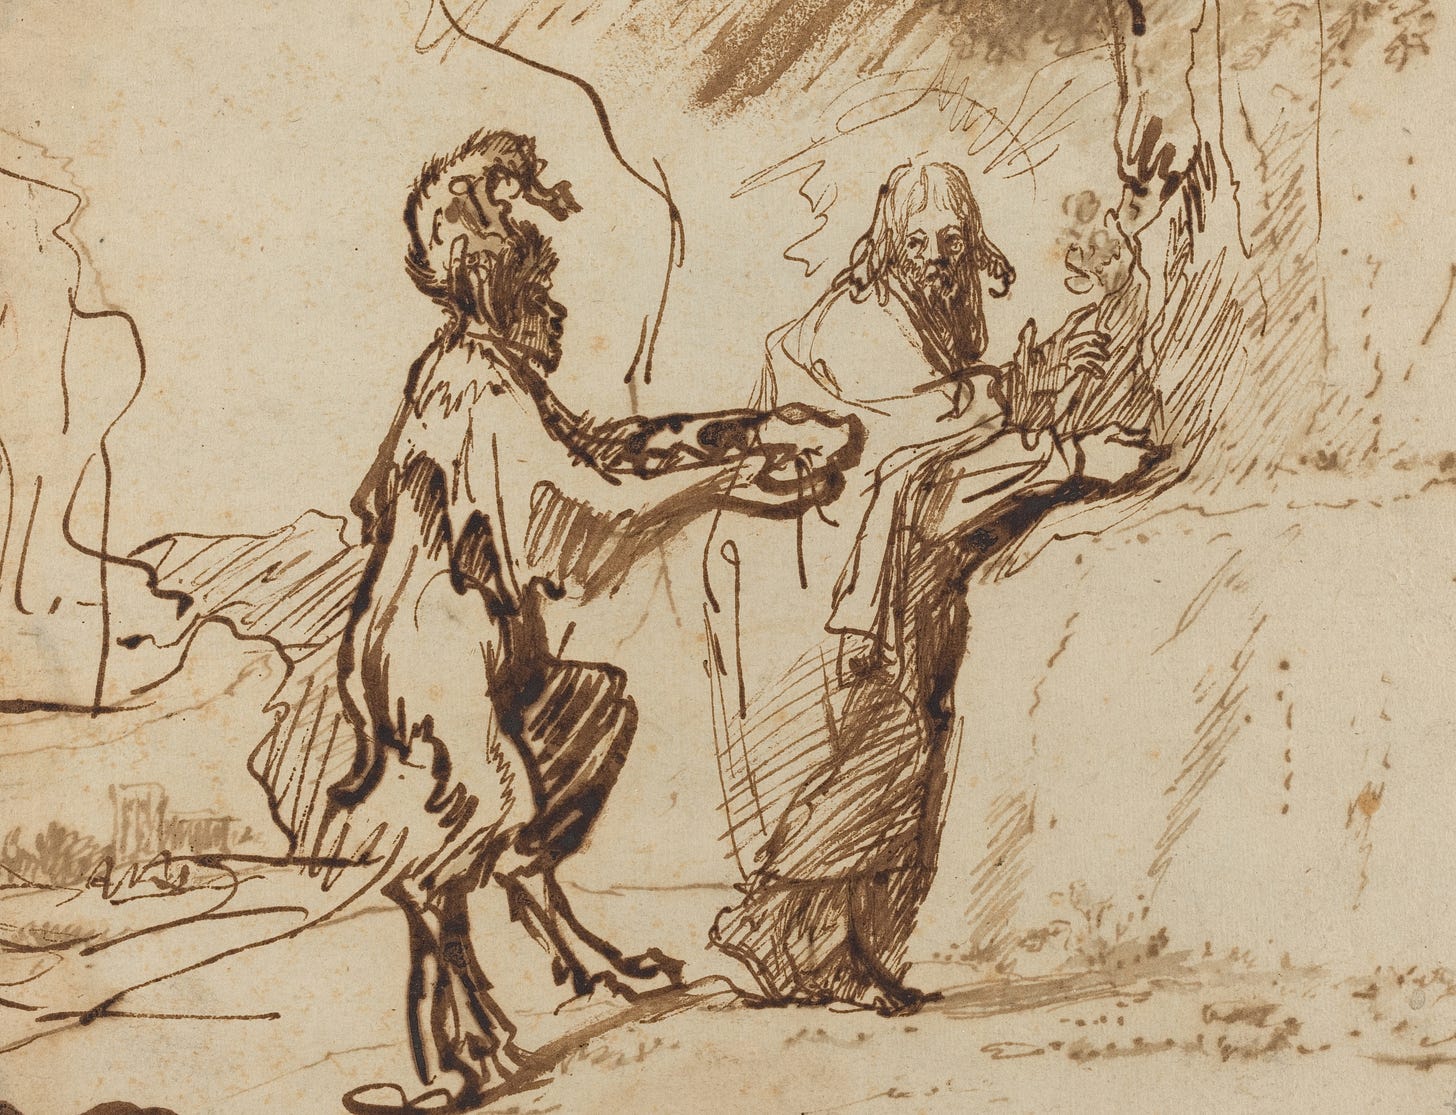 Satan Tempting Christ to Change Stones into Bread (1635-1640) by Rembrandt van Rijn